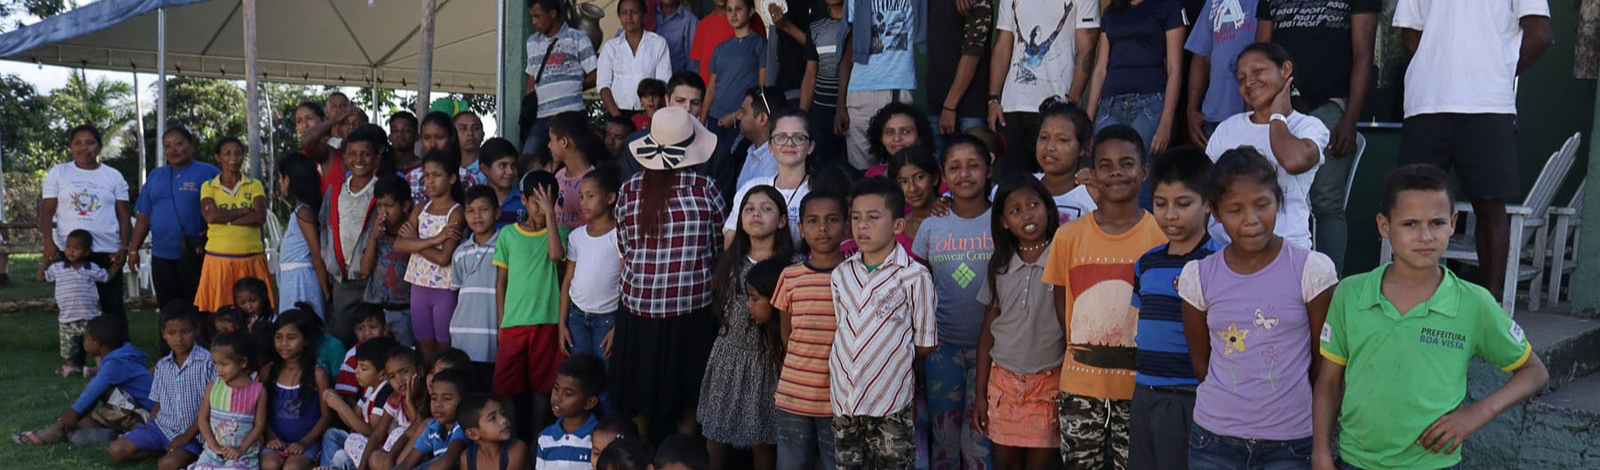 Migrante cidadão: crianças vítimas de ataque em Pacaraima recebem apoio de brasileiros